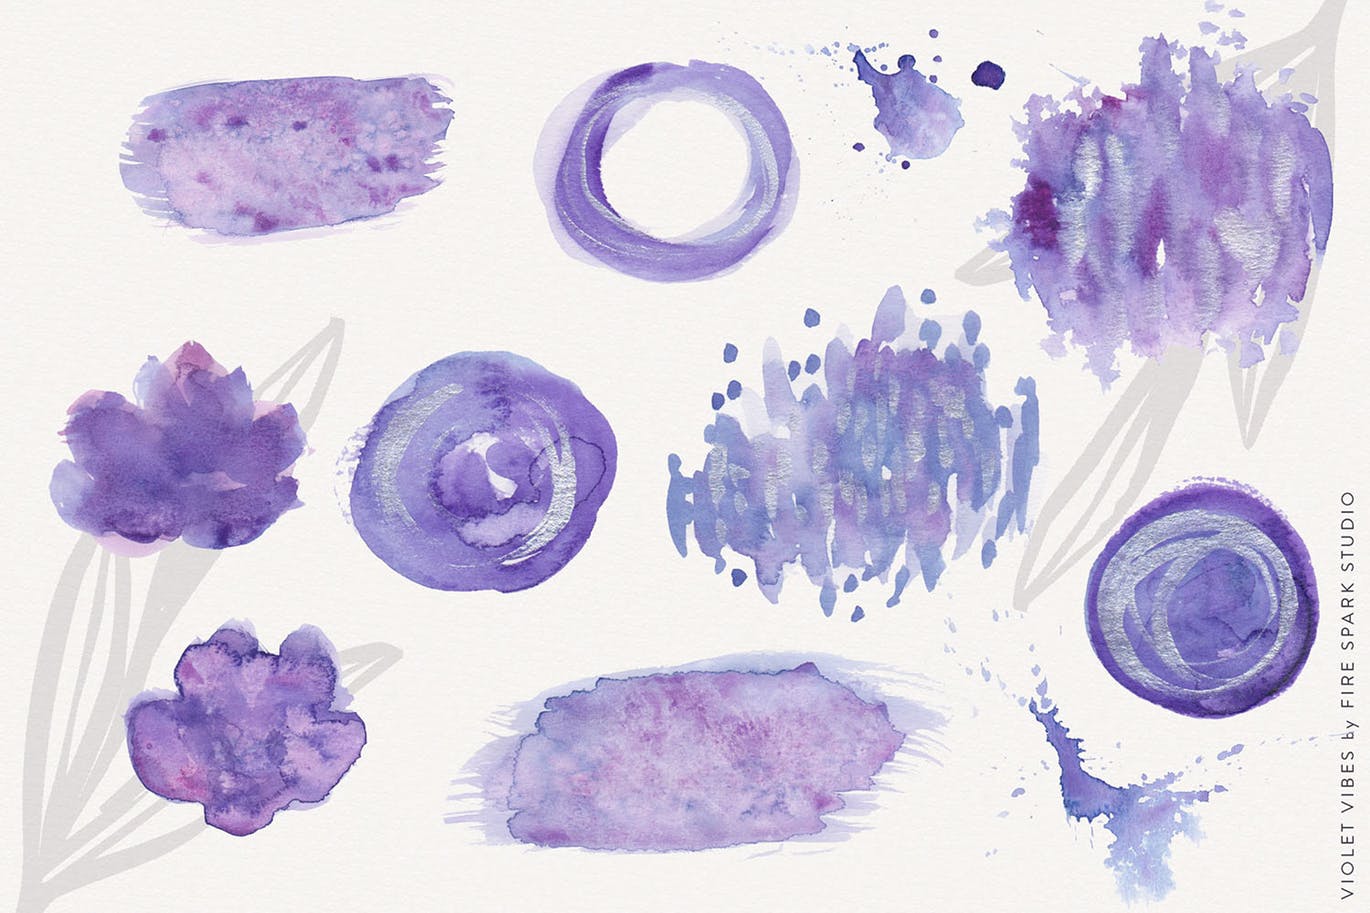 紫罗兰色时尚水彩手绘设计套件 Violet Vibes Graphic Art Kit插图(5)